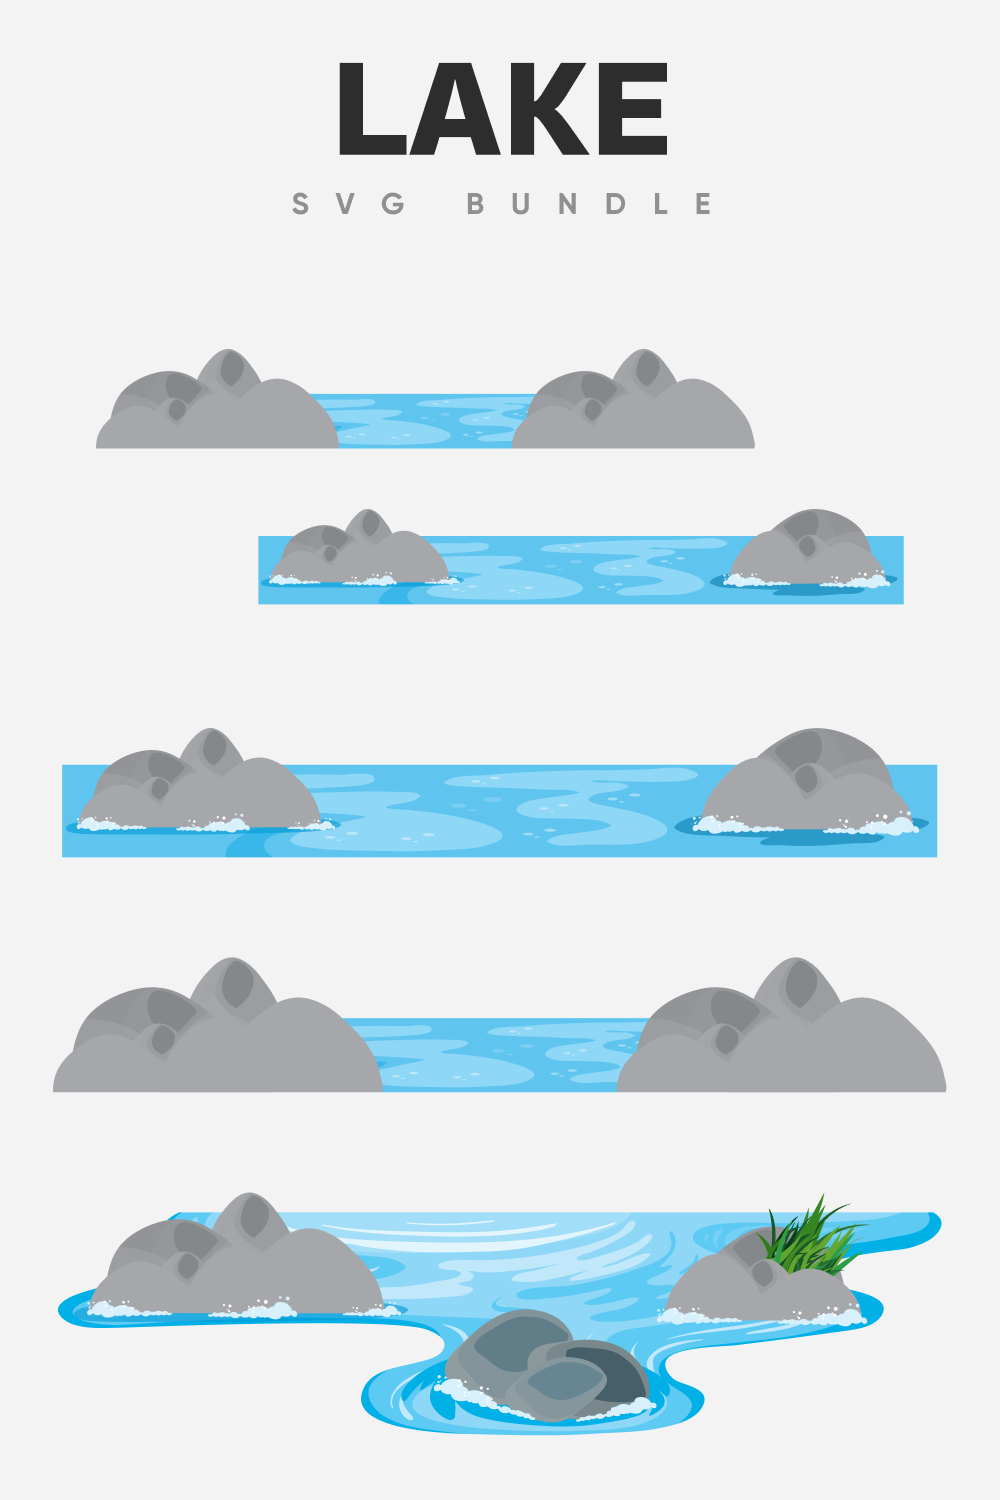 Interesing lake SVG bundle.